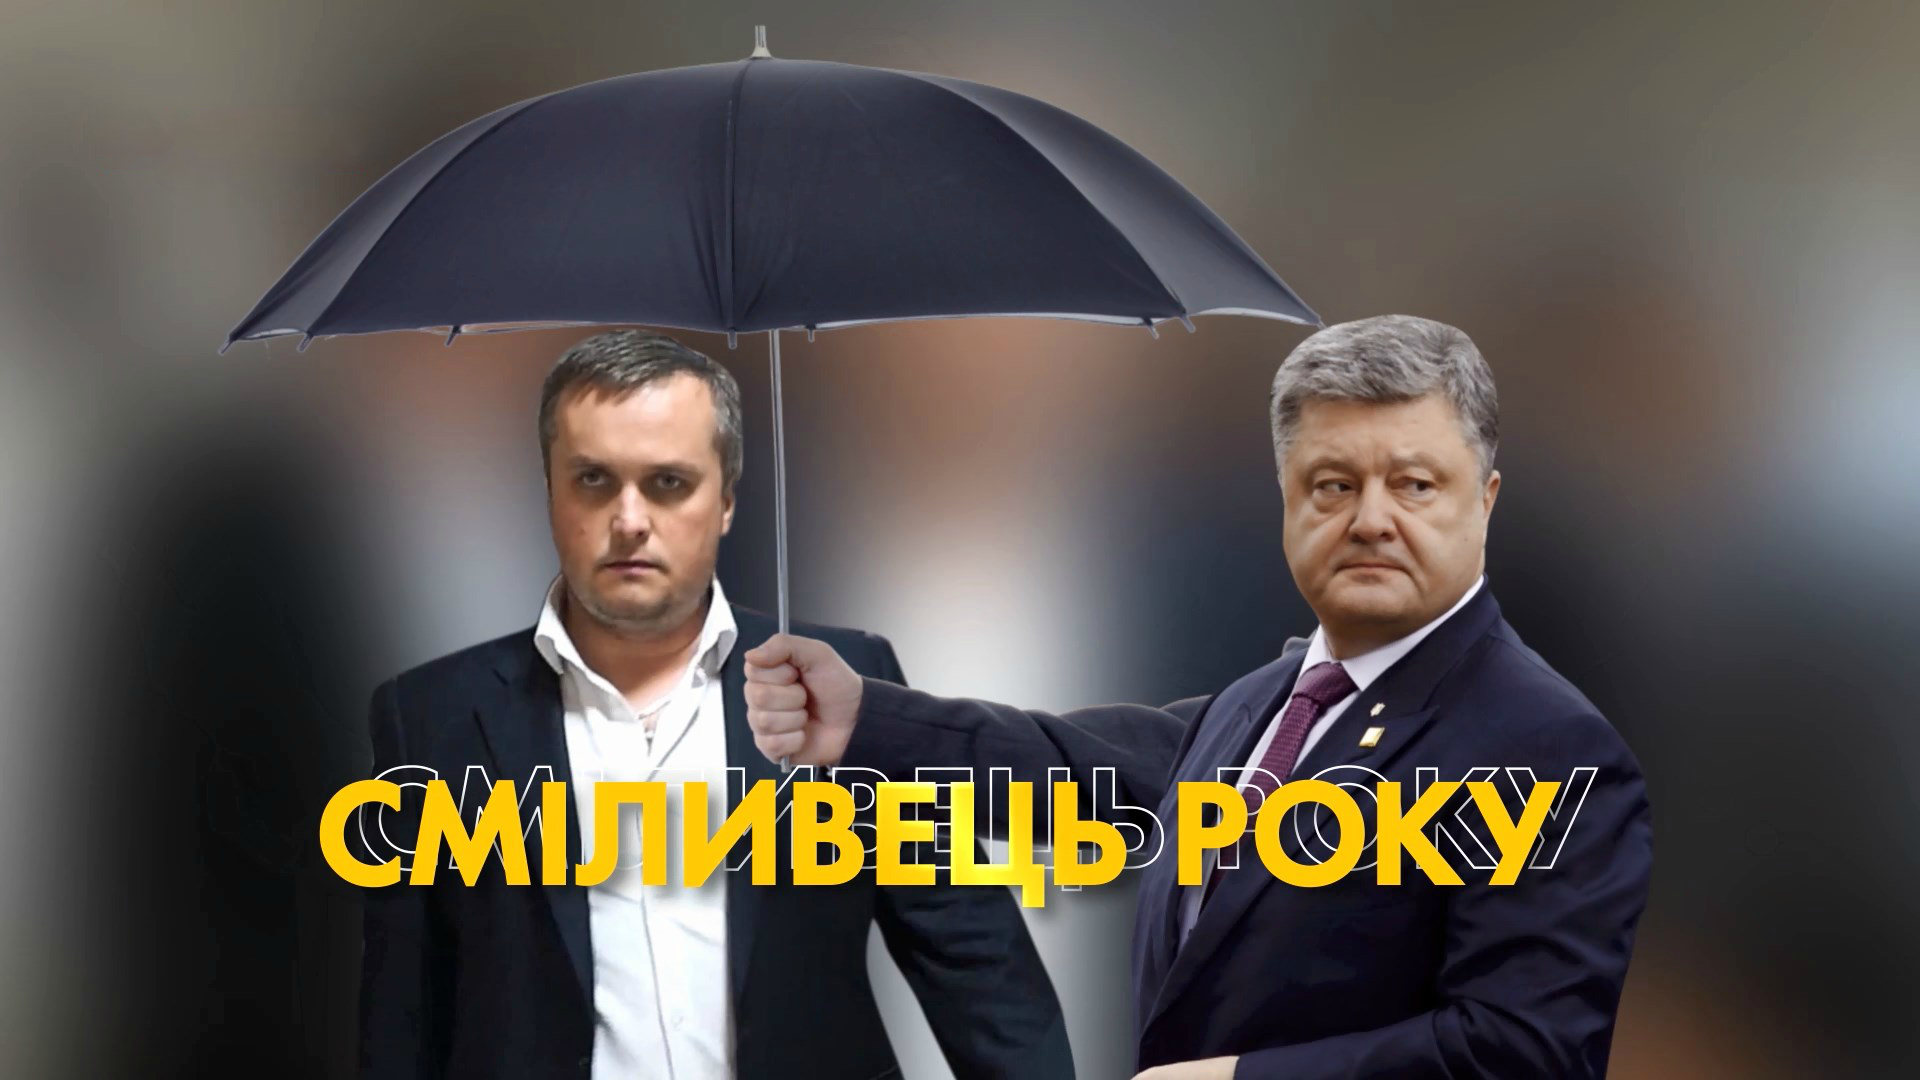 Титул "Смельчак года": почему Холодницкого охраняют аж 8 охранников от Порошенко